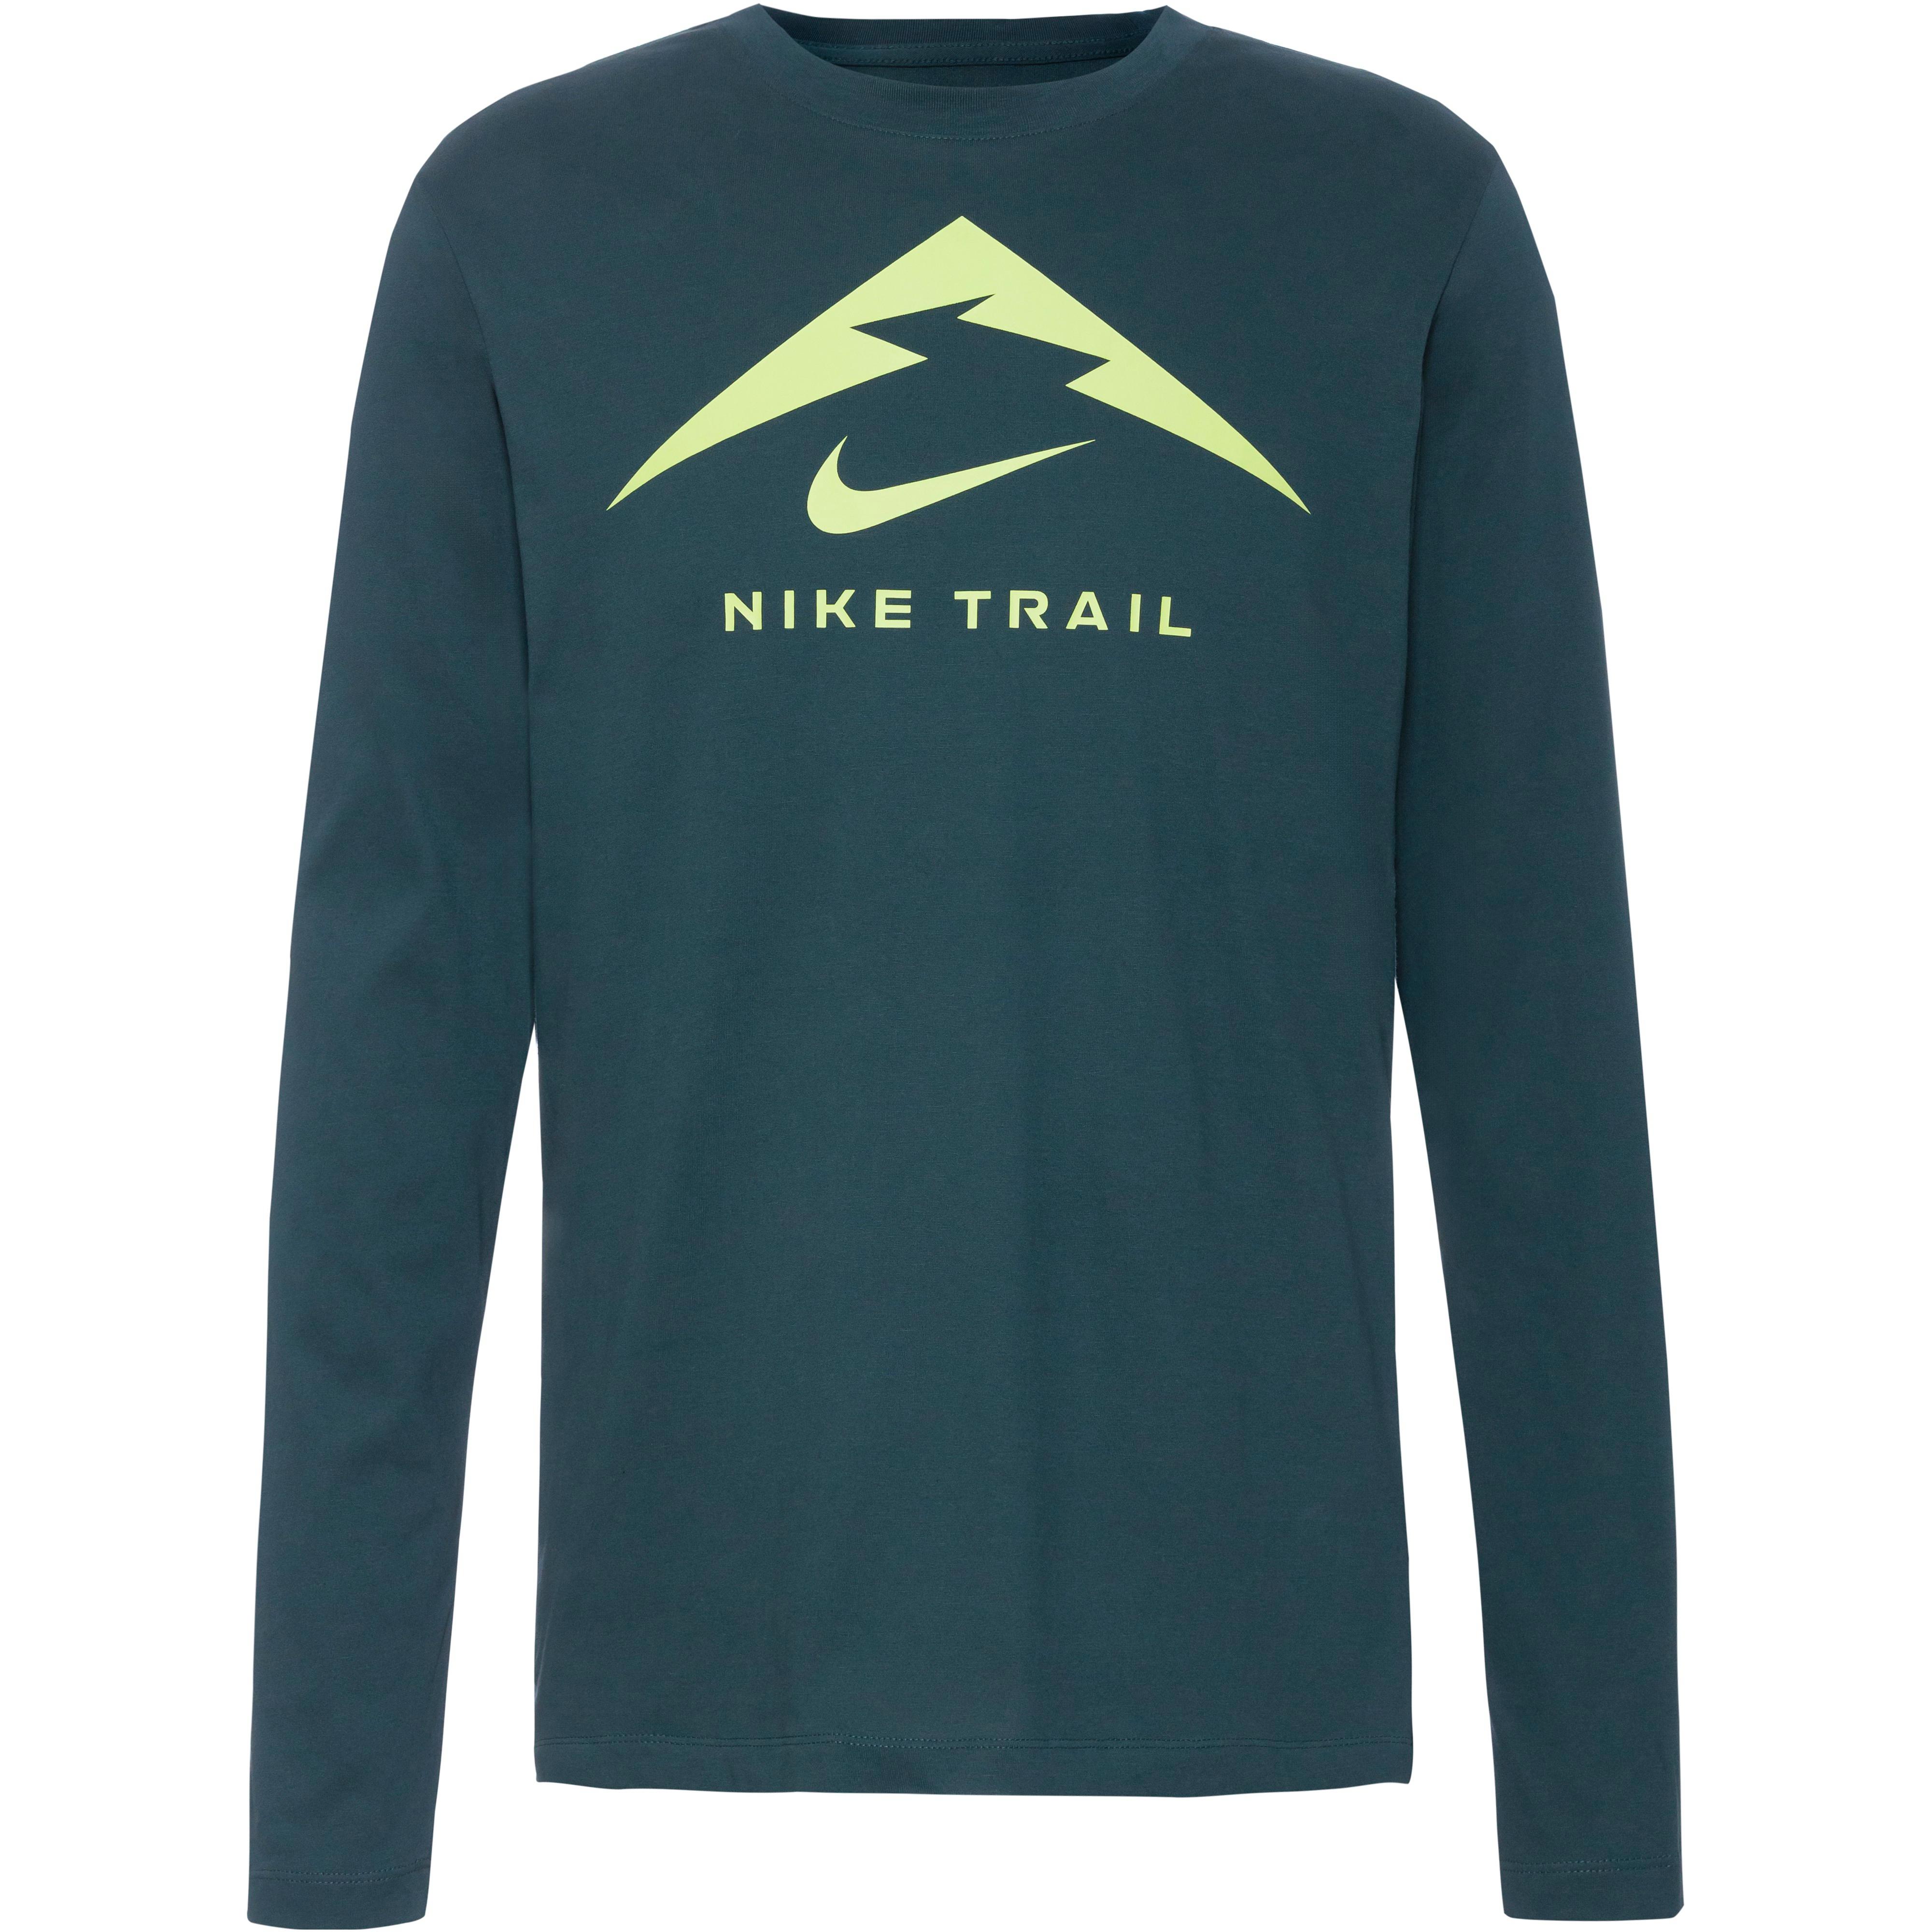 bestellen online bei Nike SportScheck bequem Shirts